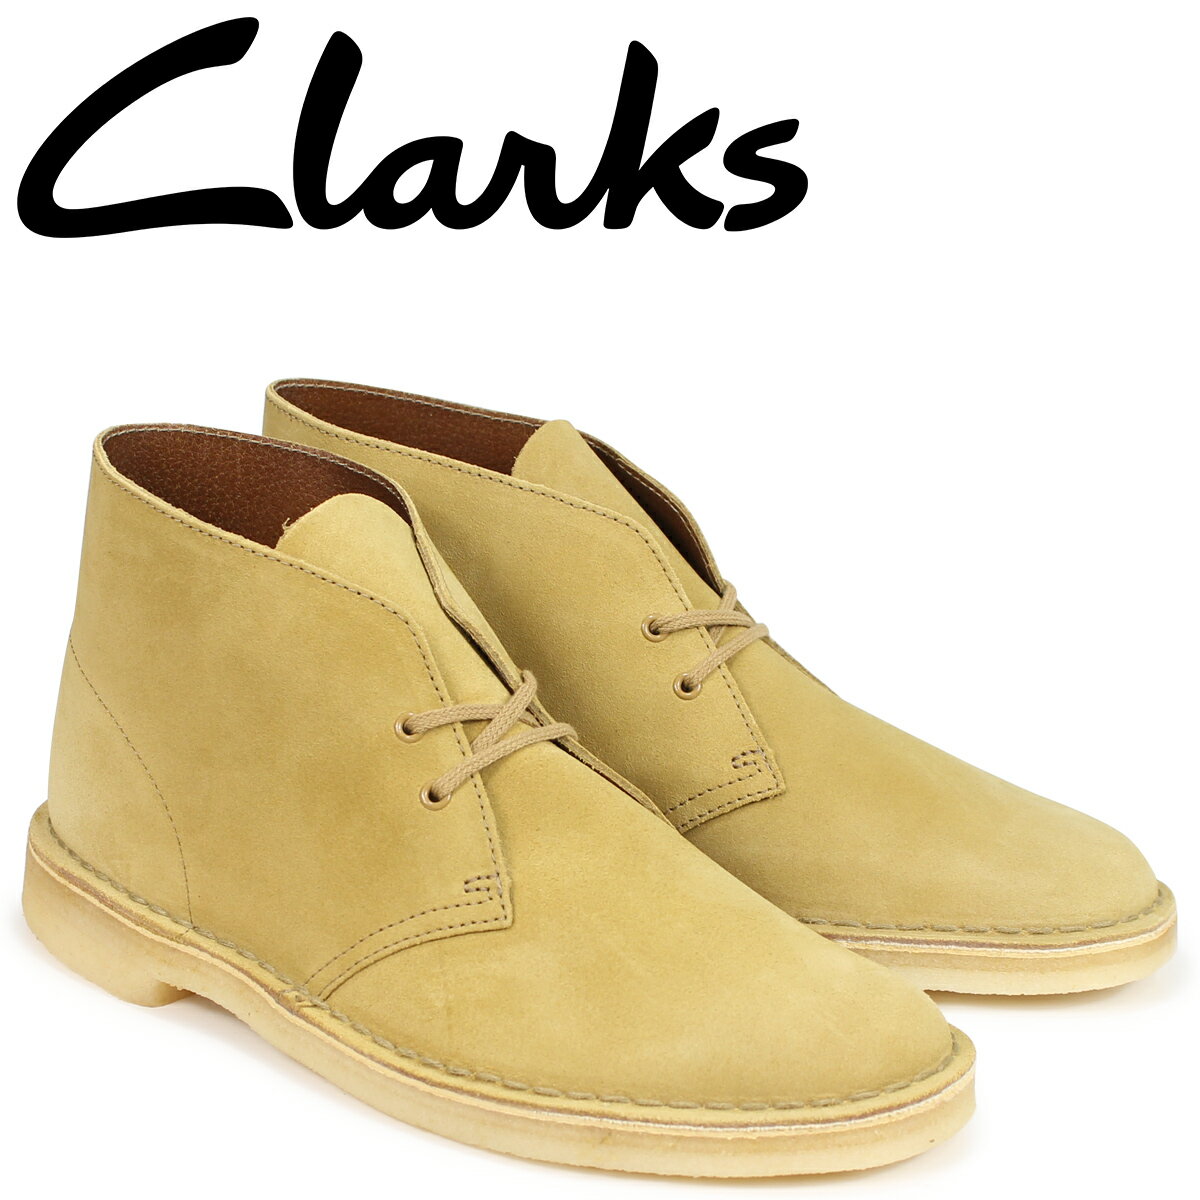 クラークス Clarks デザートブーツ メンズ DESERT BOOT 26138233 ライトブラウン